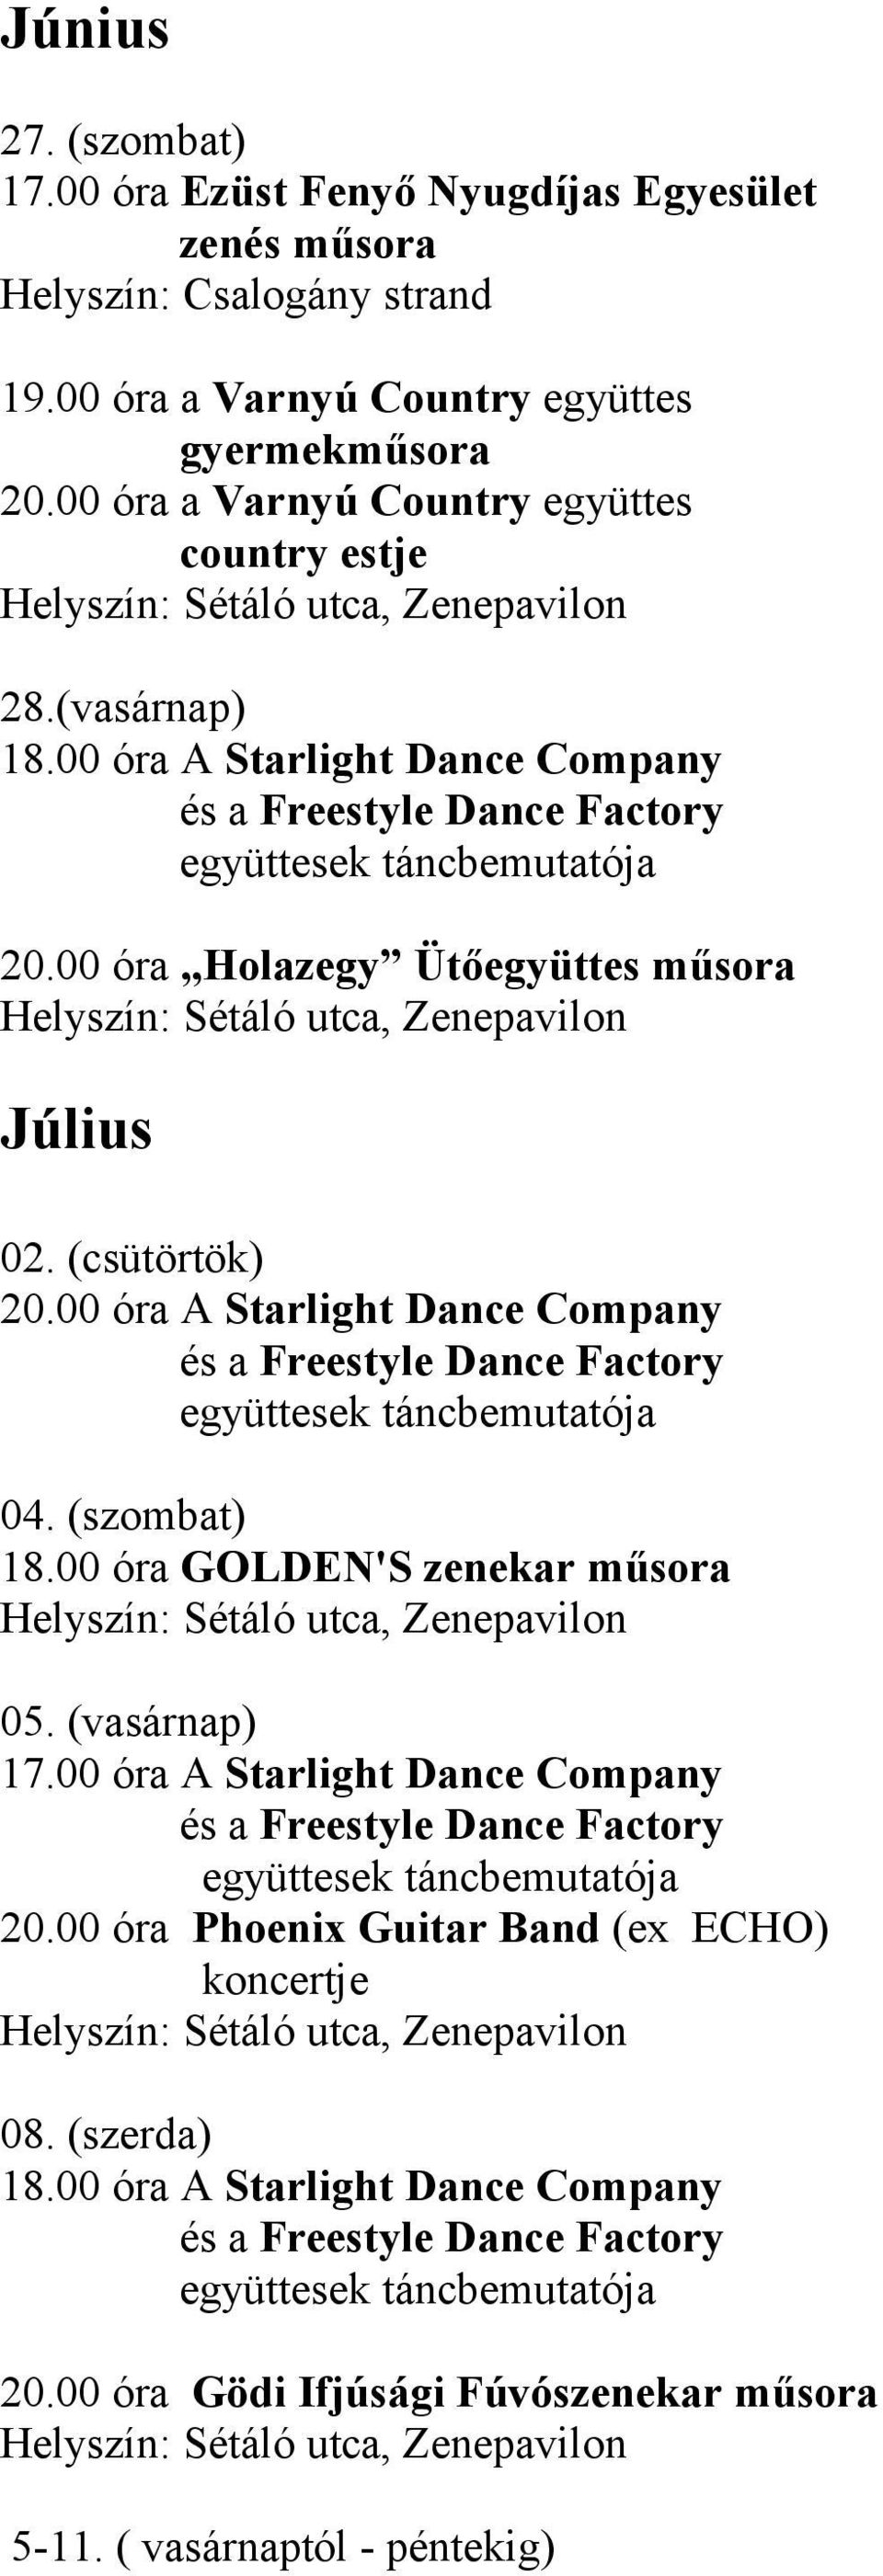 (csütörtök) 20.00 óra A Starlight Dance Company 04. (szombat) 18.00 óra GOLDEN'S zenekar műsora 05. (vasárnap) 17.